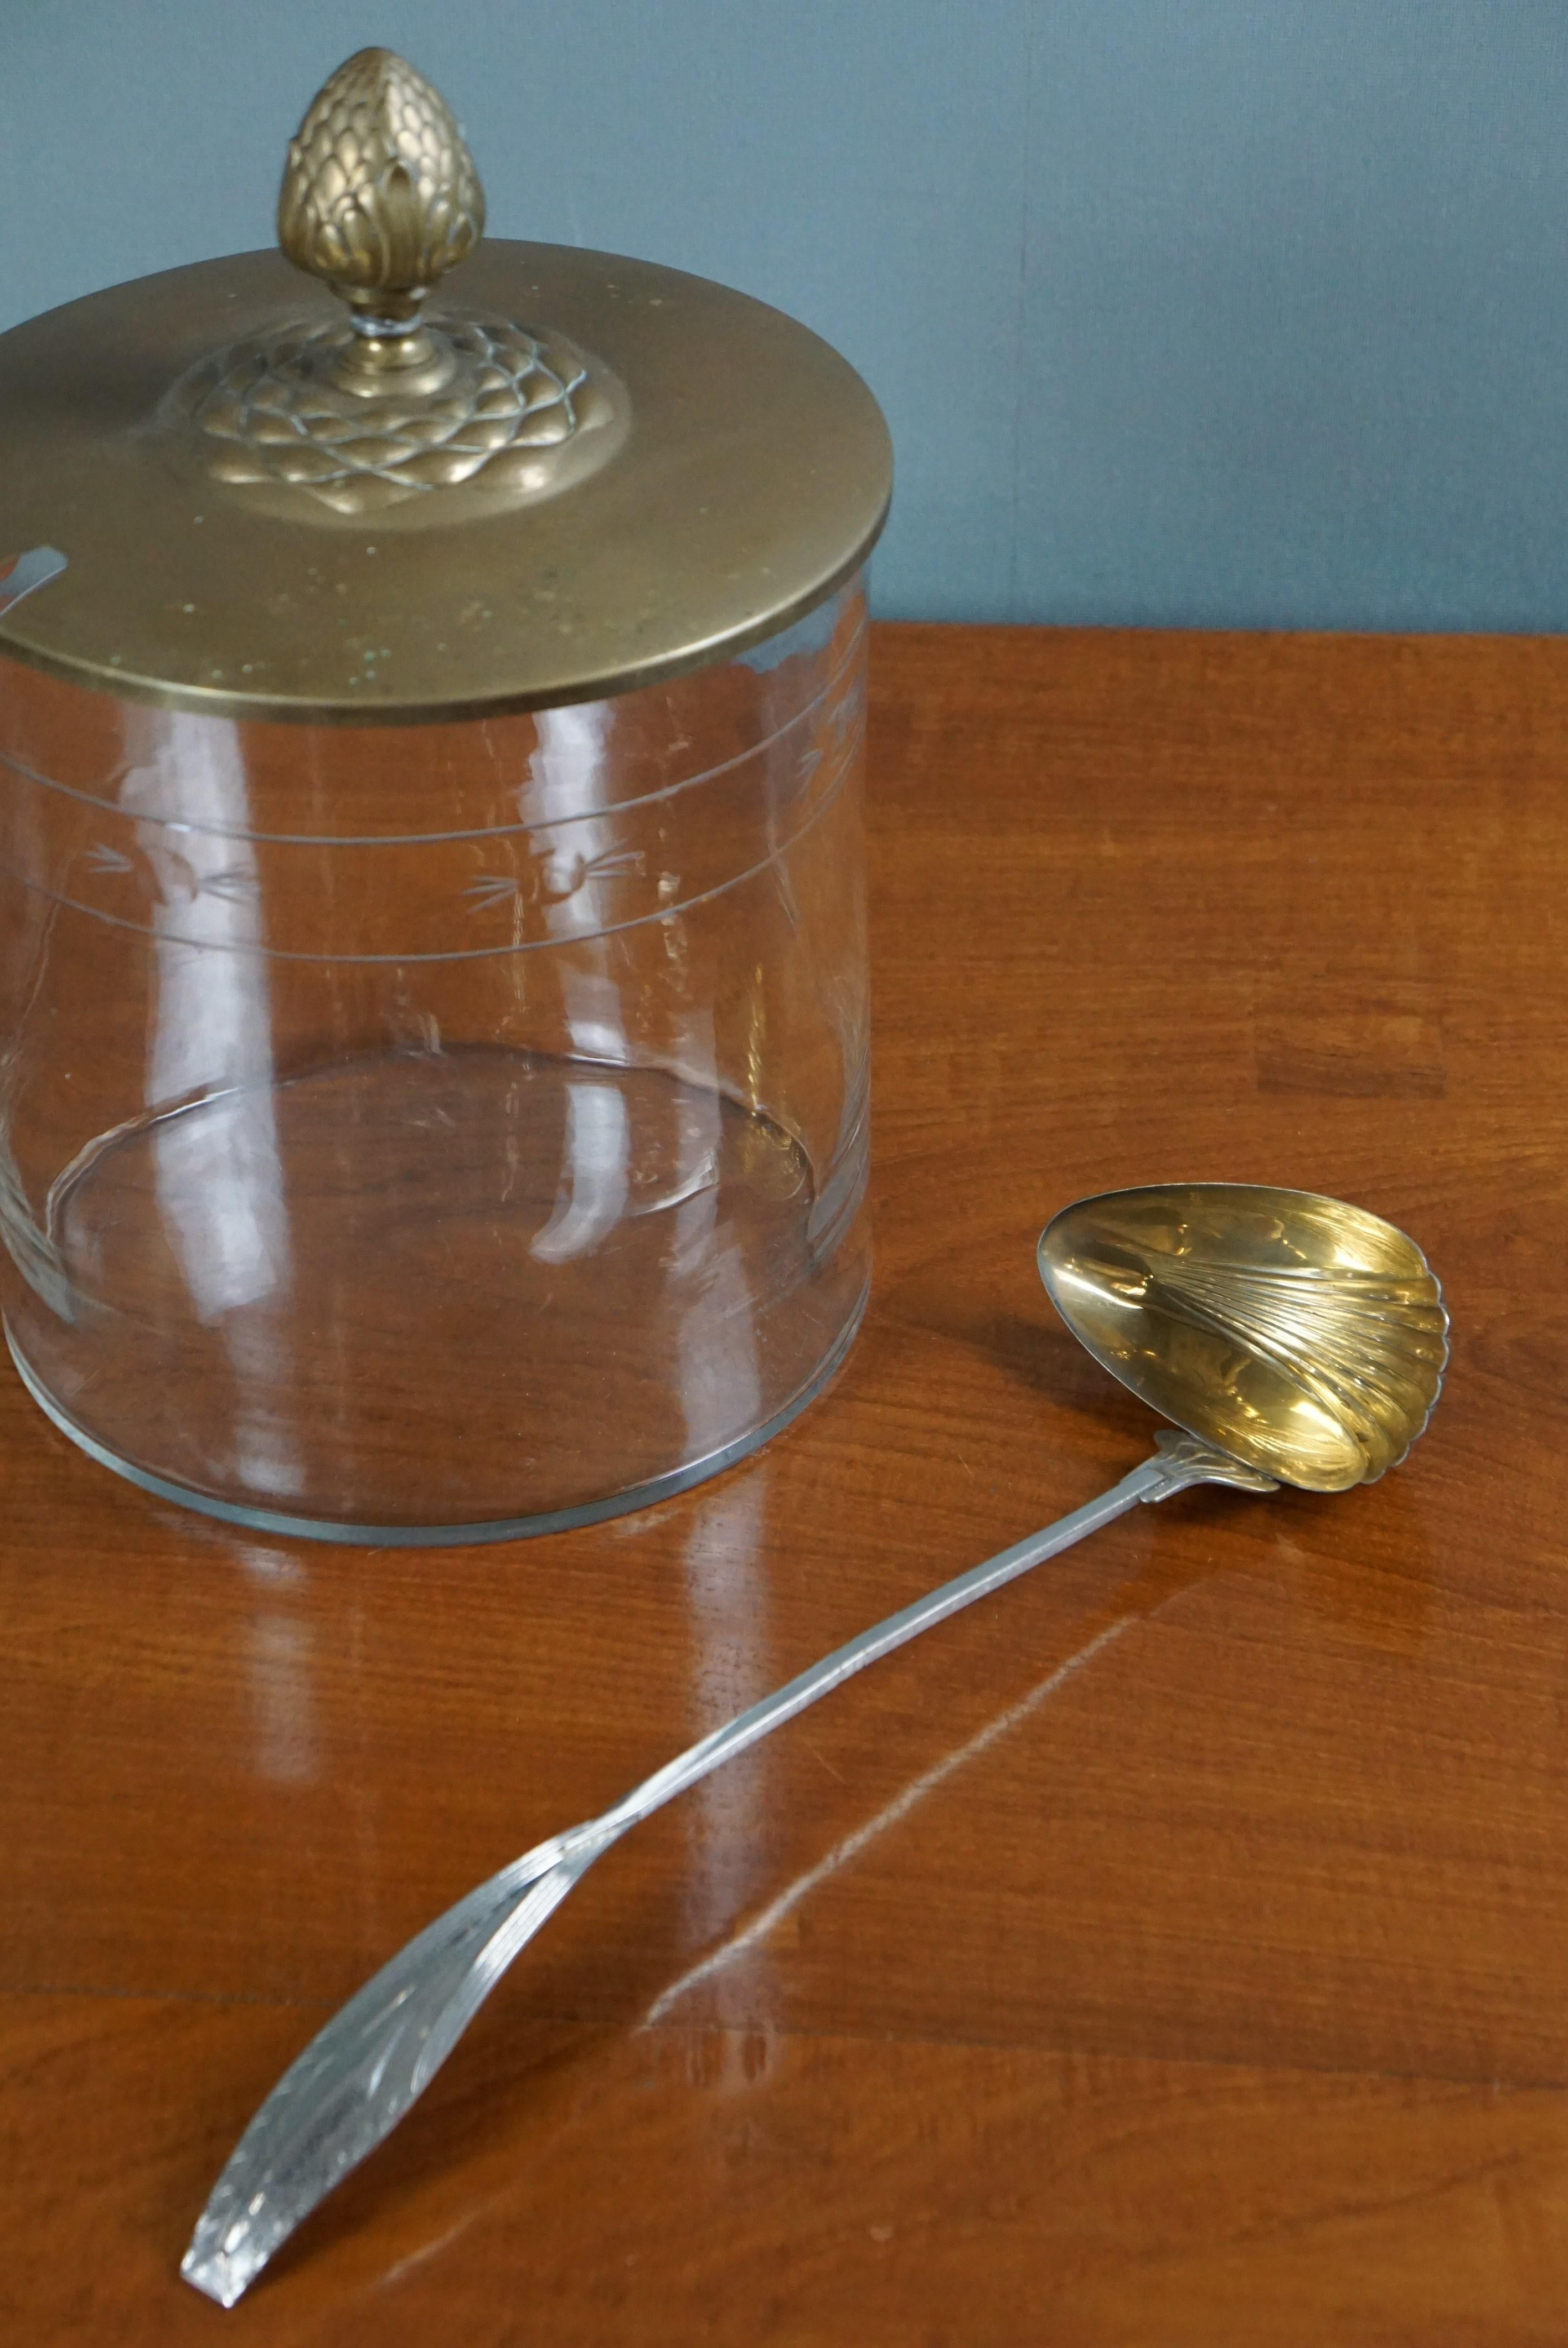 Il s'agit d'un bol à punch avec une cuillère argentée et un couvercle en laiton.

Ce bol à punch est un bel exemple d'ustensile qui peut aussi très bien servir d'objet de décoration.
La cuillère est patinée et décorée, ce qui en fait un objet